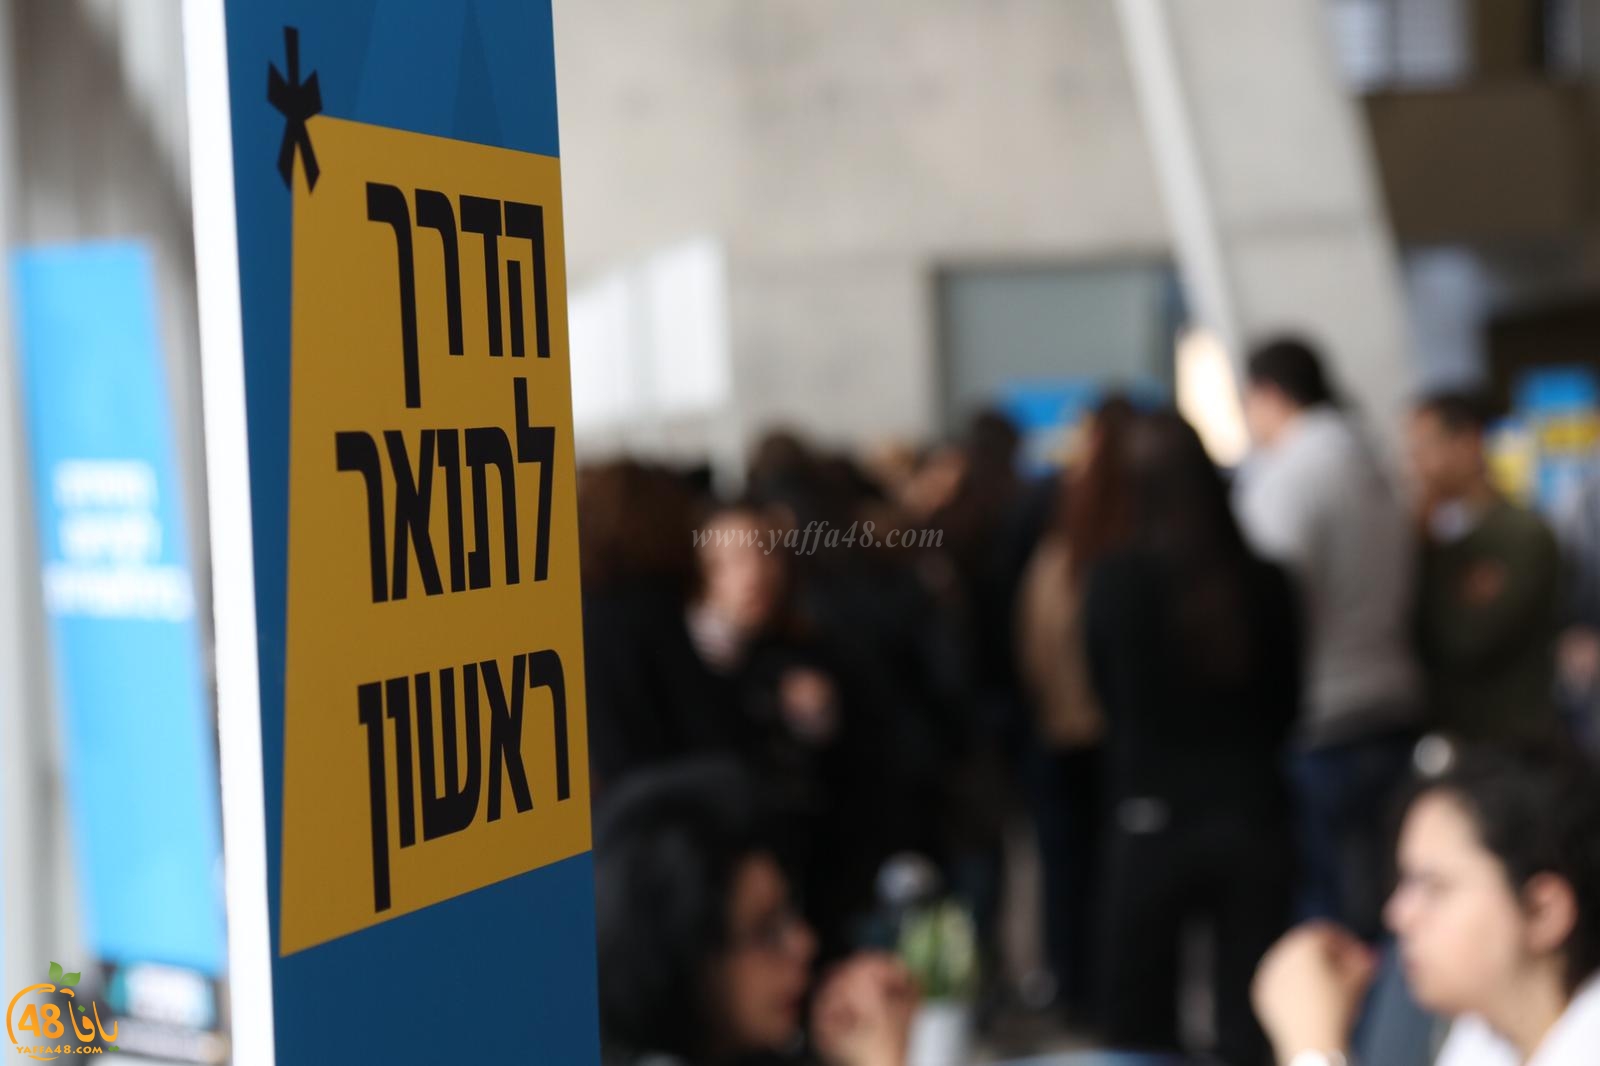  بالصور: الكلية الأكاديمية تل ابيب يافا تُنظم يوماً مفتوحاً 